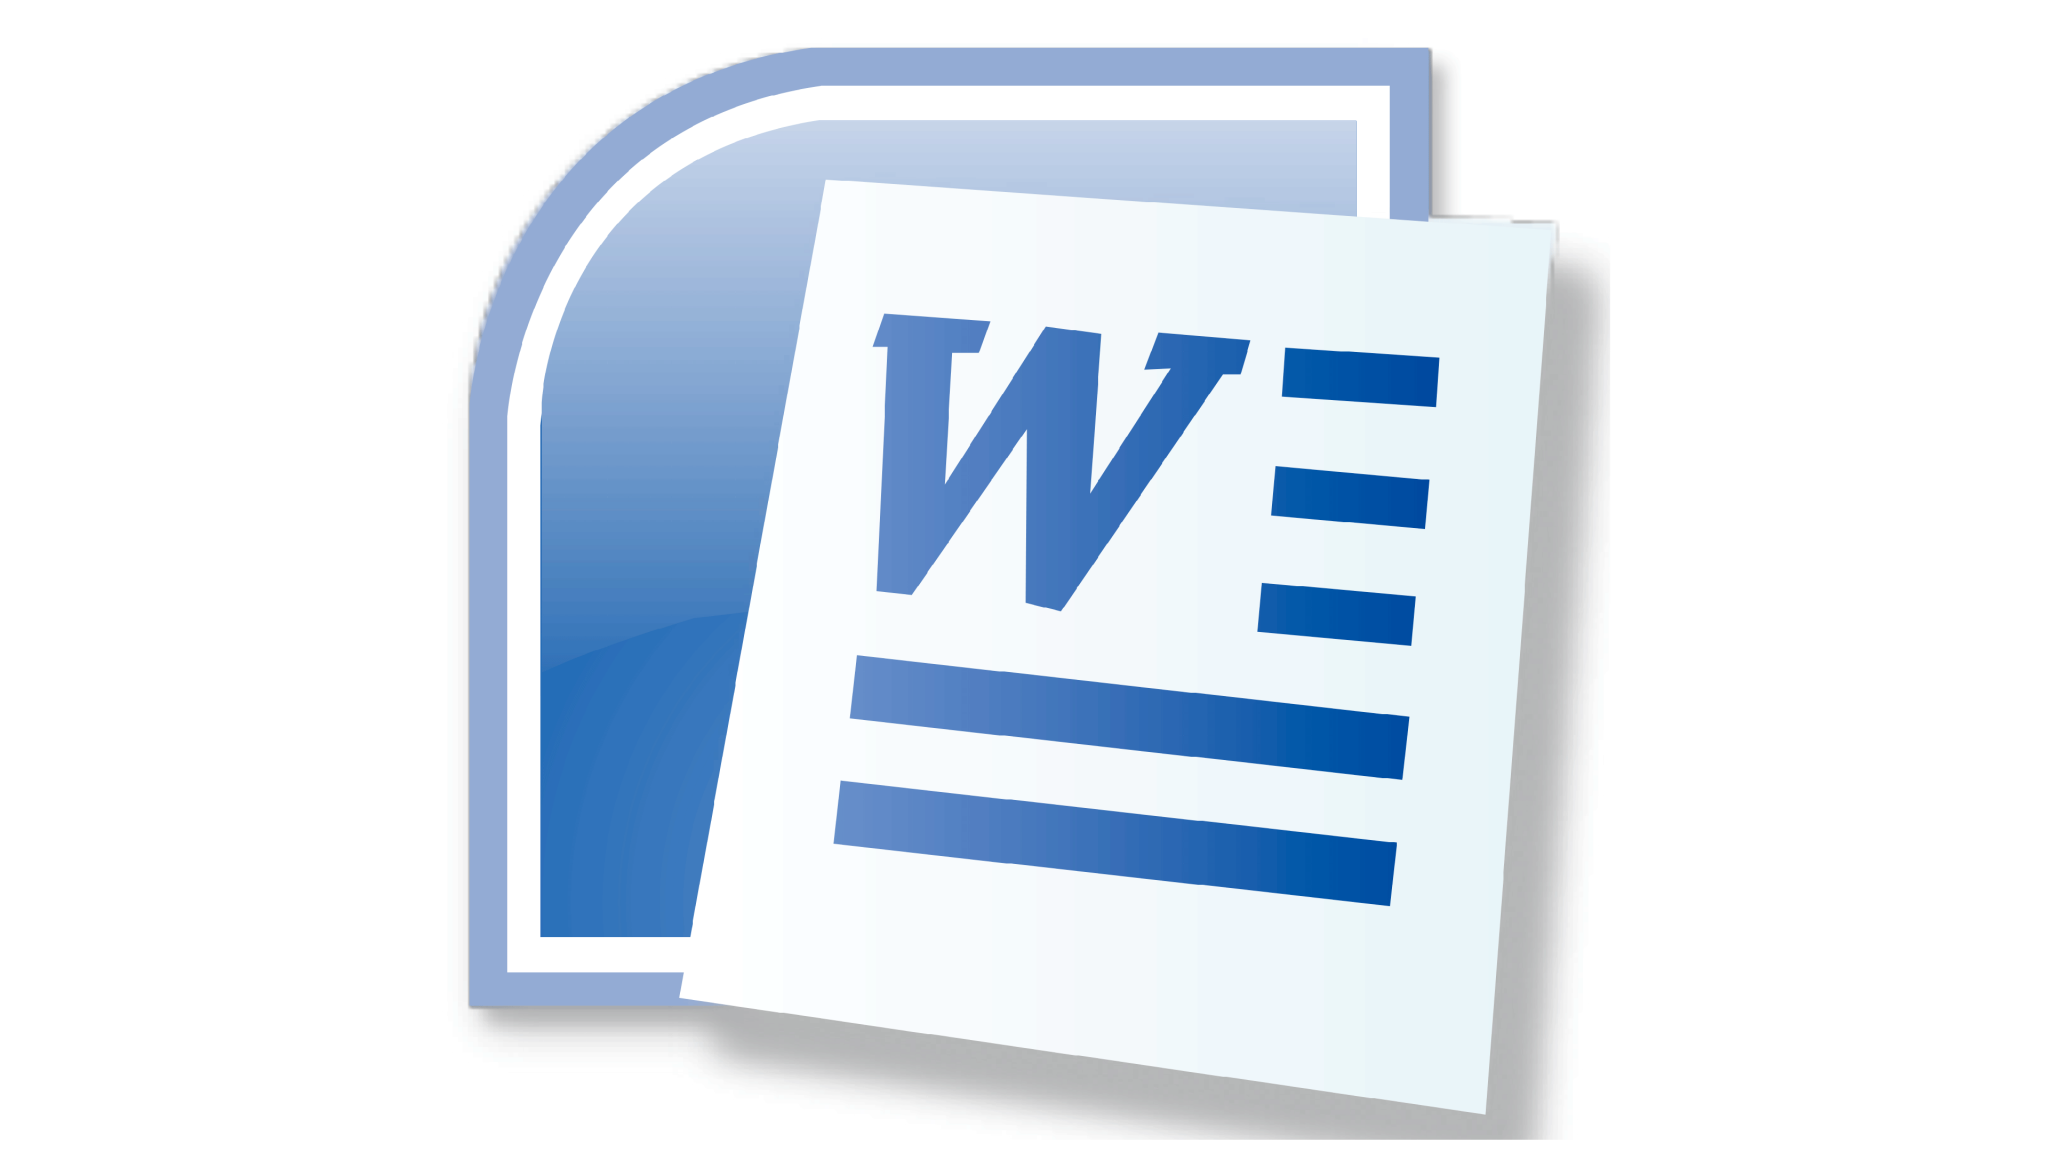 Microsoft Office Word логотип. Значок Майкрософт ворд 2010. MS Word 2007 значок. Microsoft Office Word 2010 логотип. Ярлык ворд